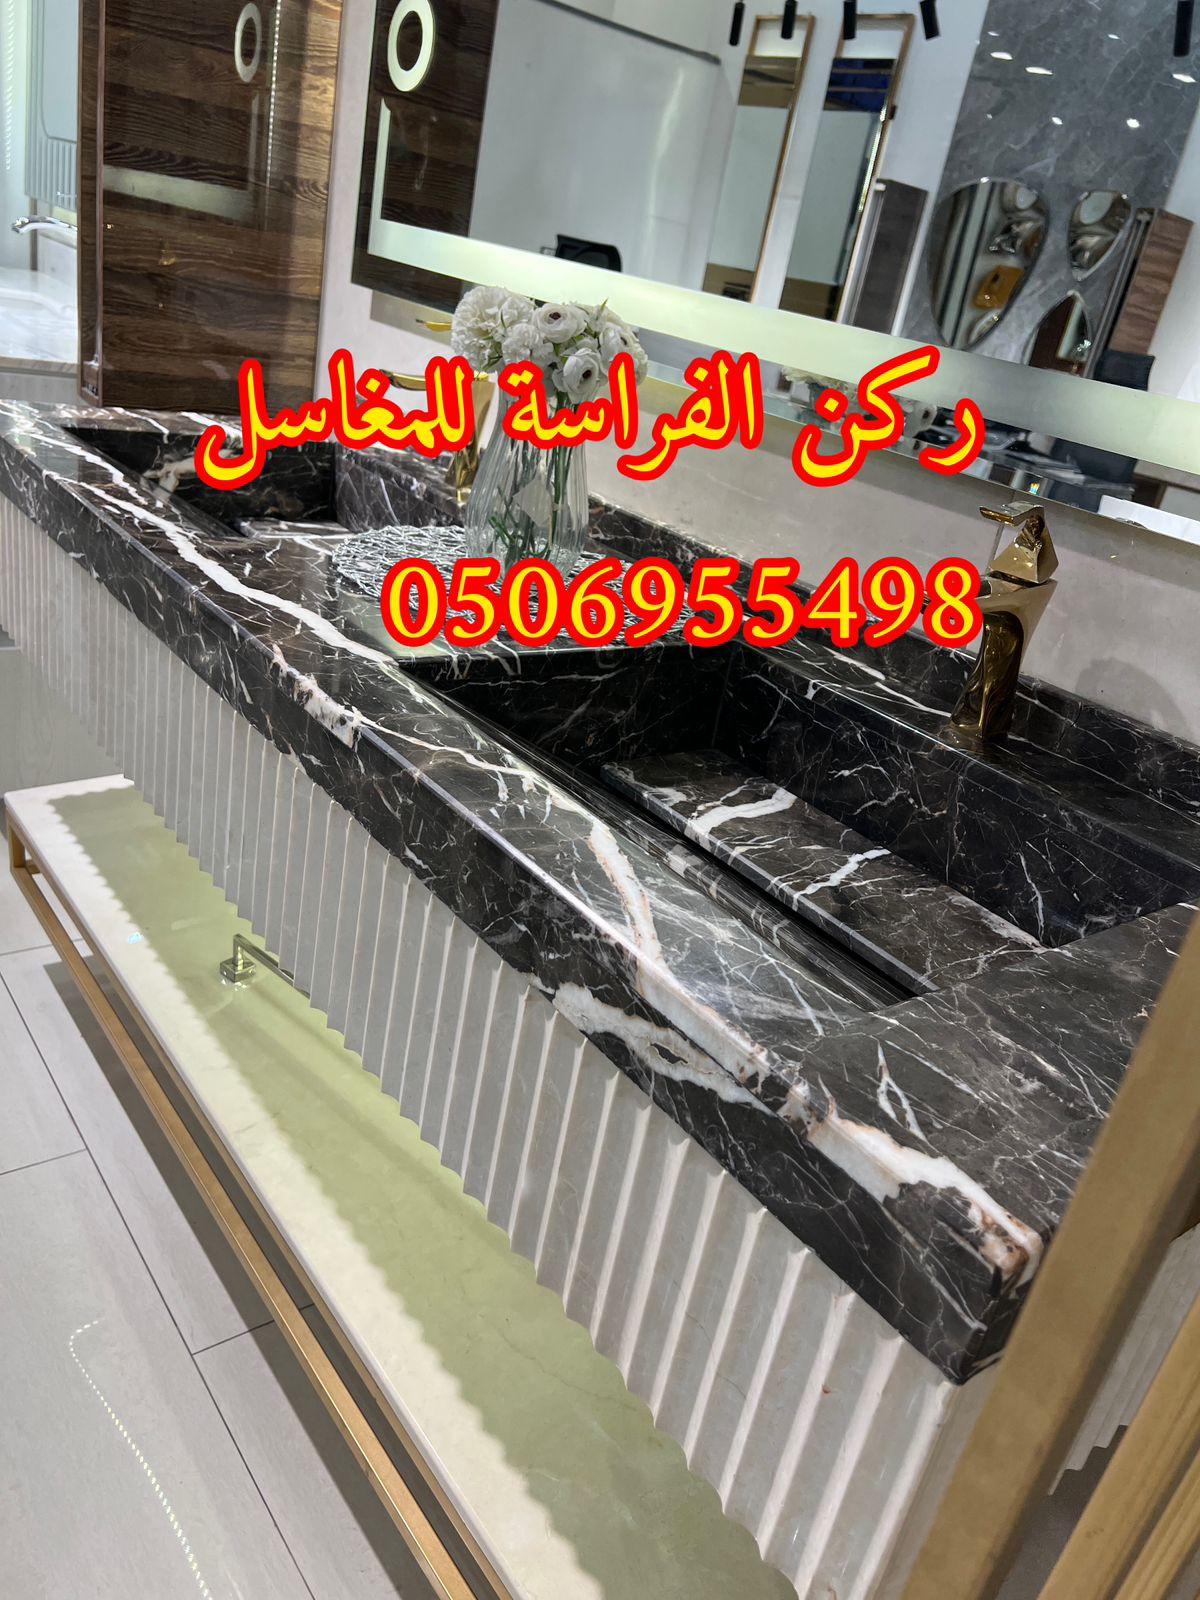 مغاسل رخام في الرياض مودرن للمجالس,0506955498 867719158